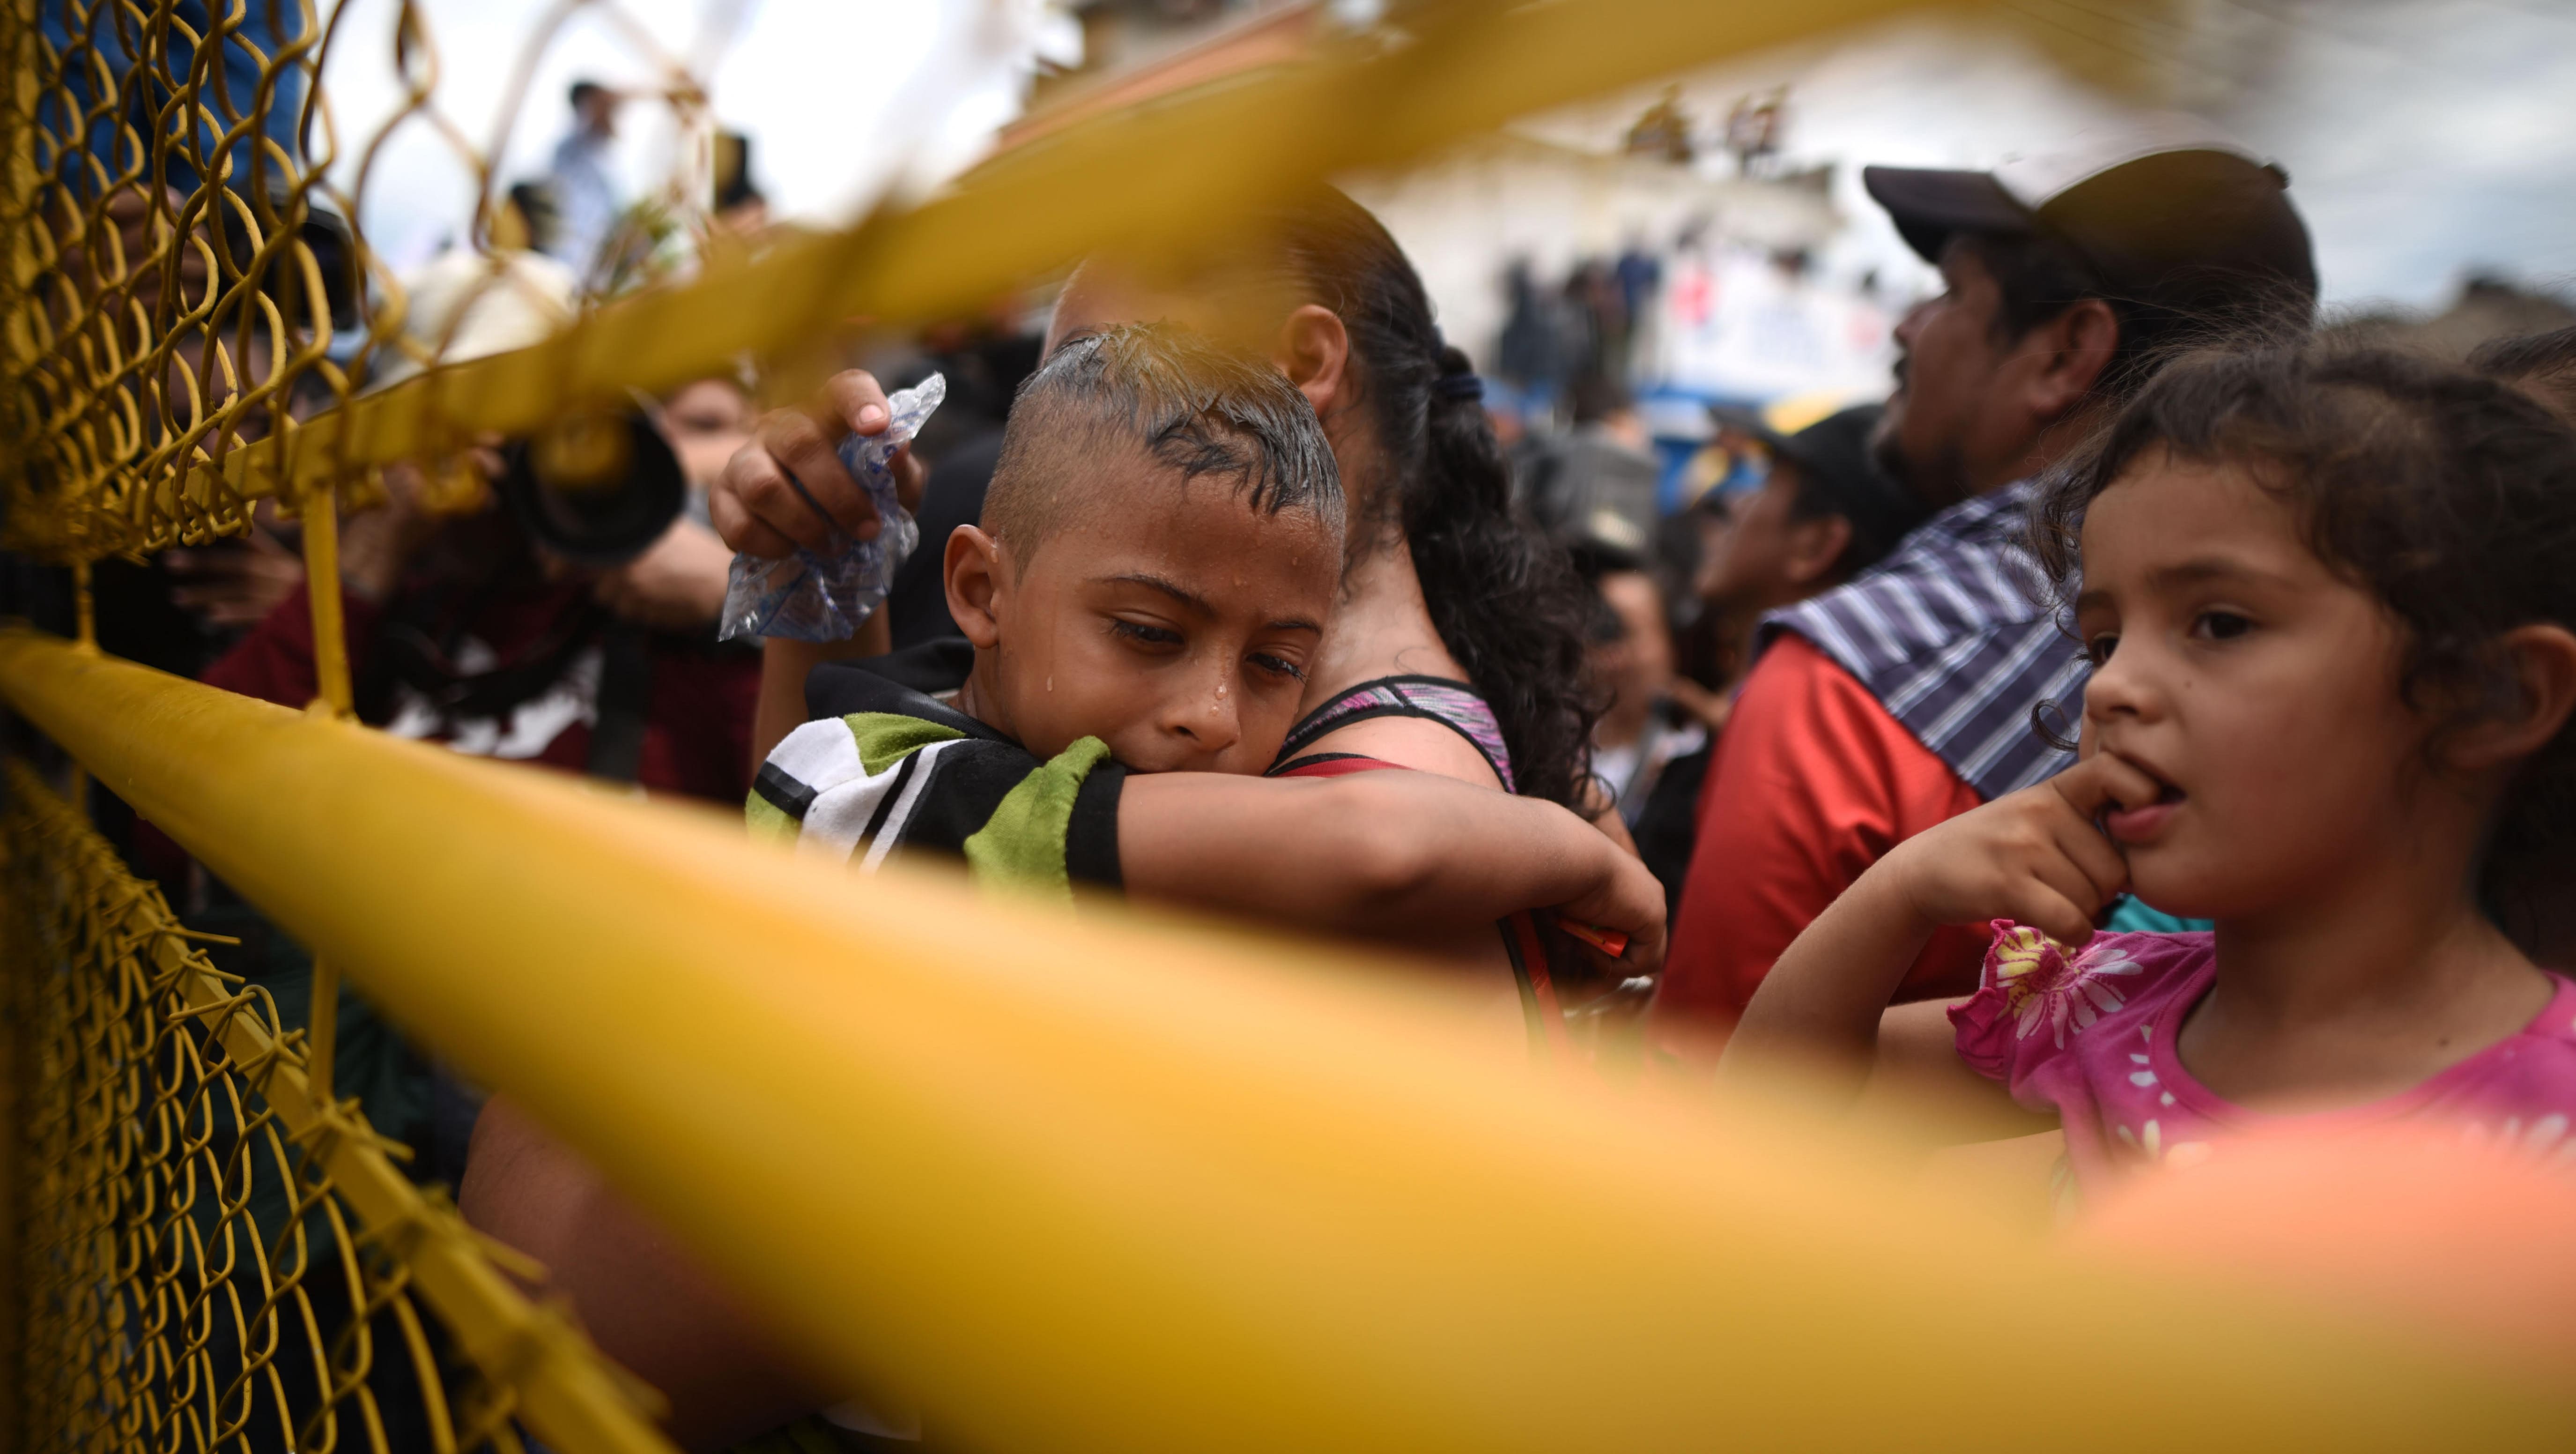 El Gobierno de Estados Unidos ofreció a México unos 20 millones de dólares para que evitaran el avance de la caravana de migrantes hacia su nación.